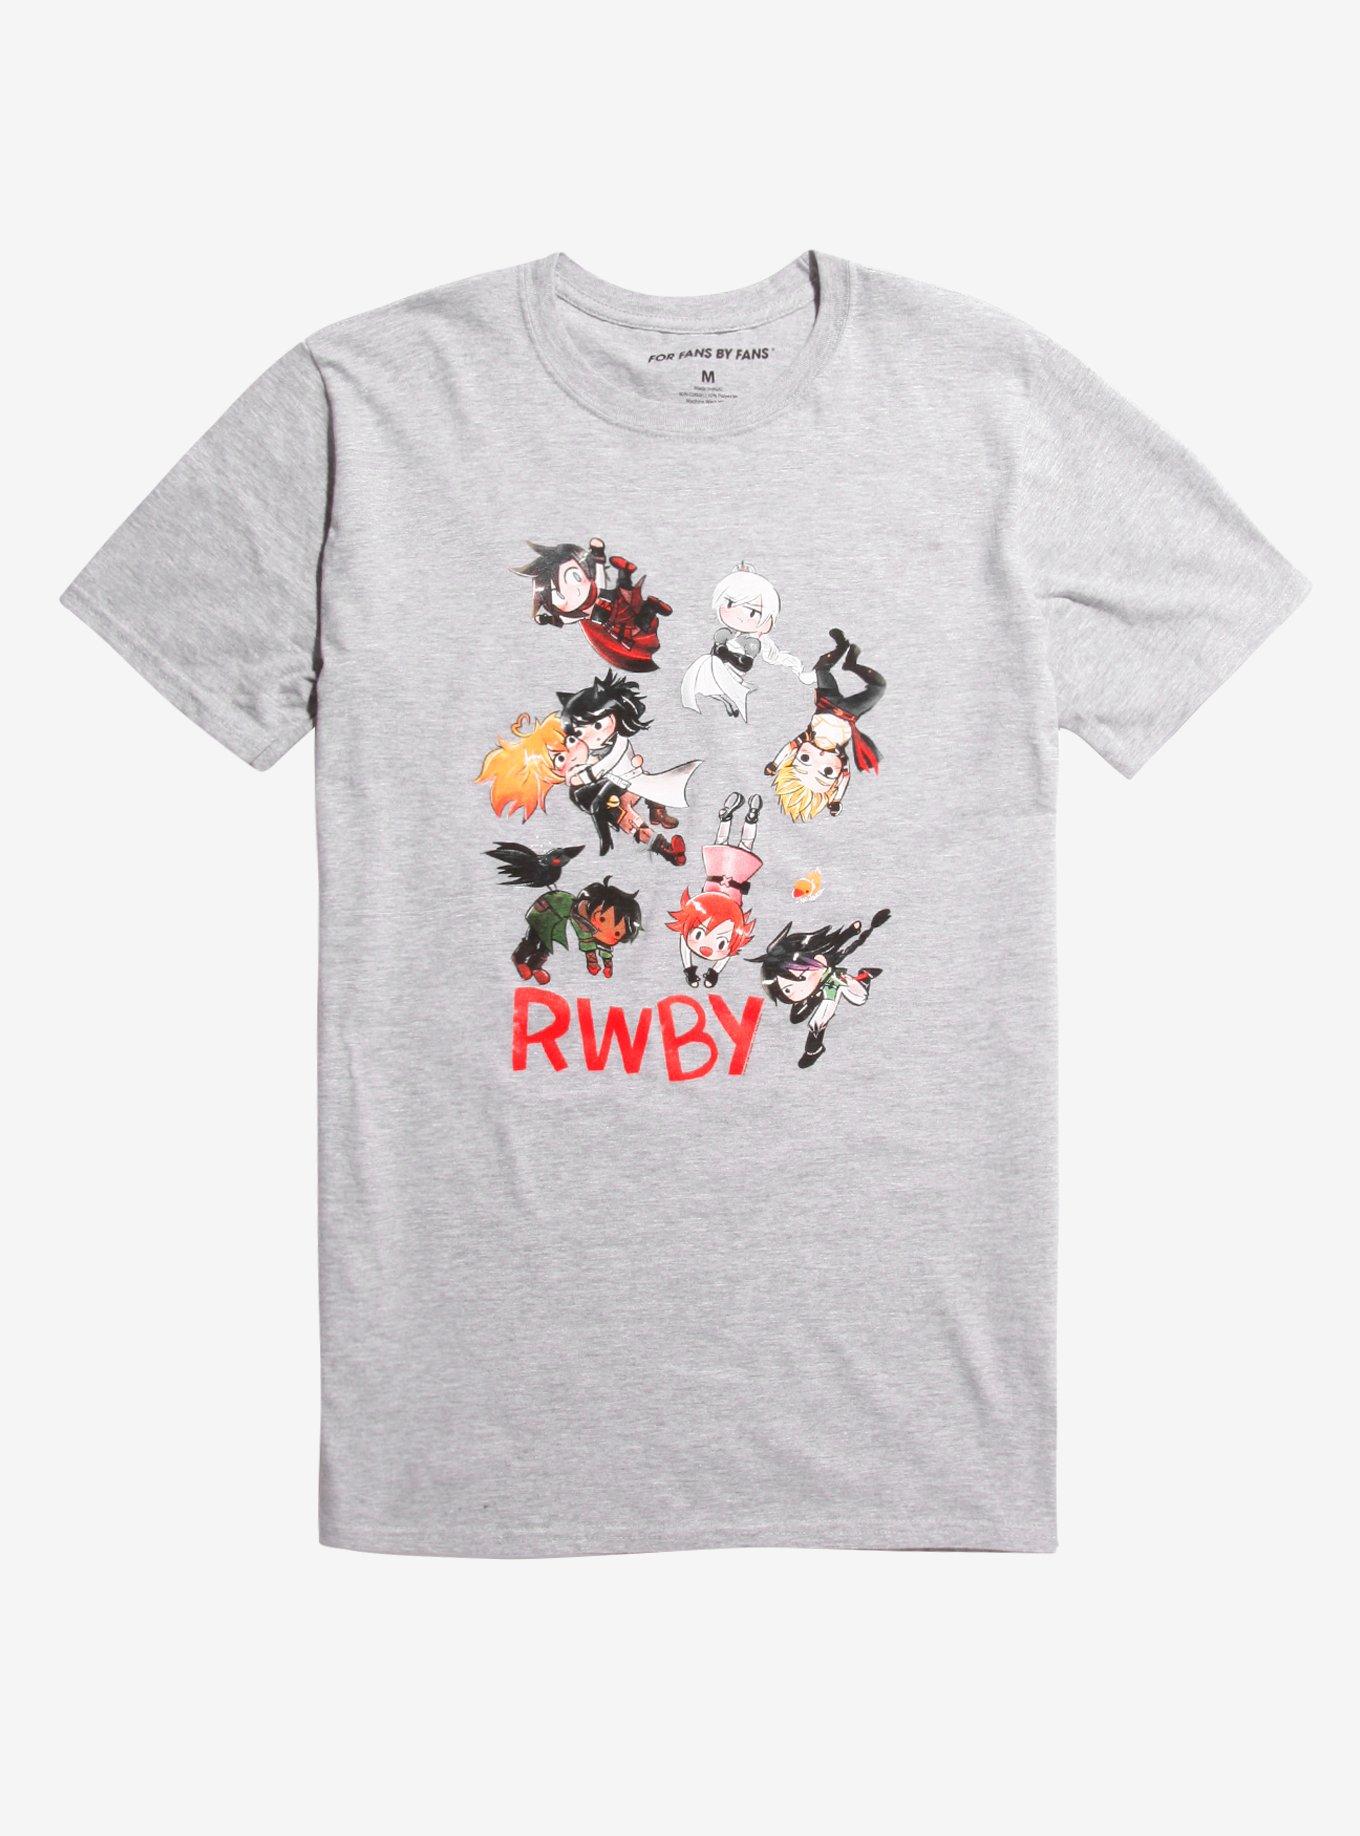 RWBY Chibi Characters T-Shirt, GREY, hi-res